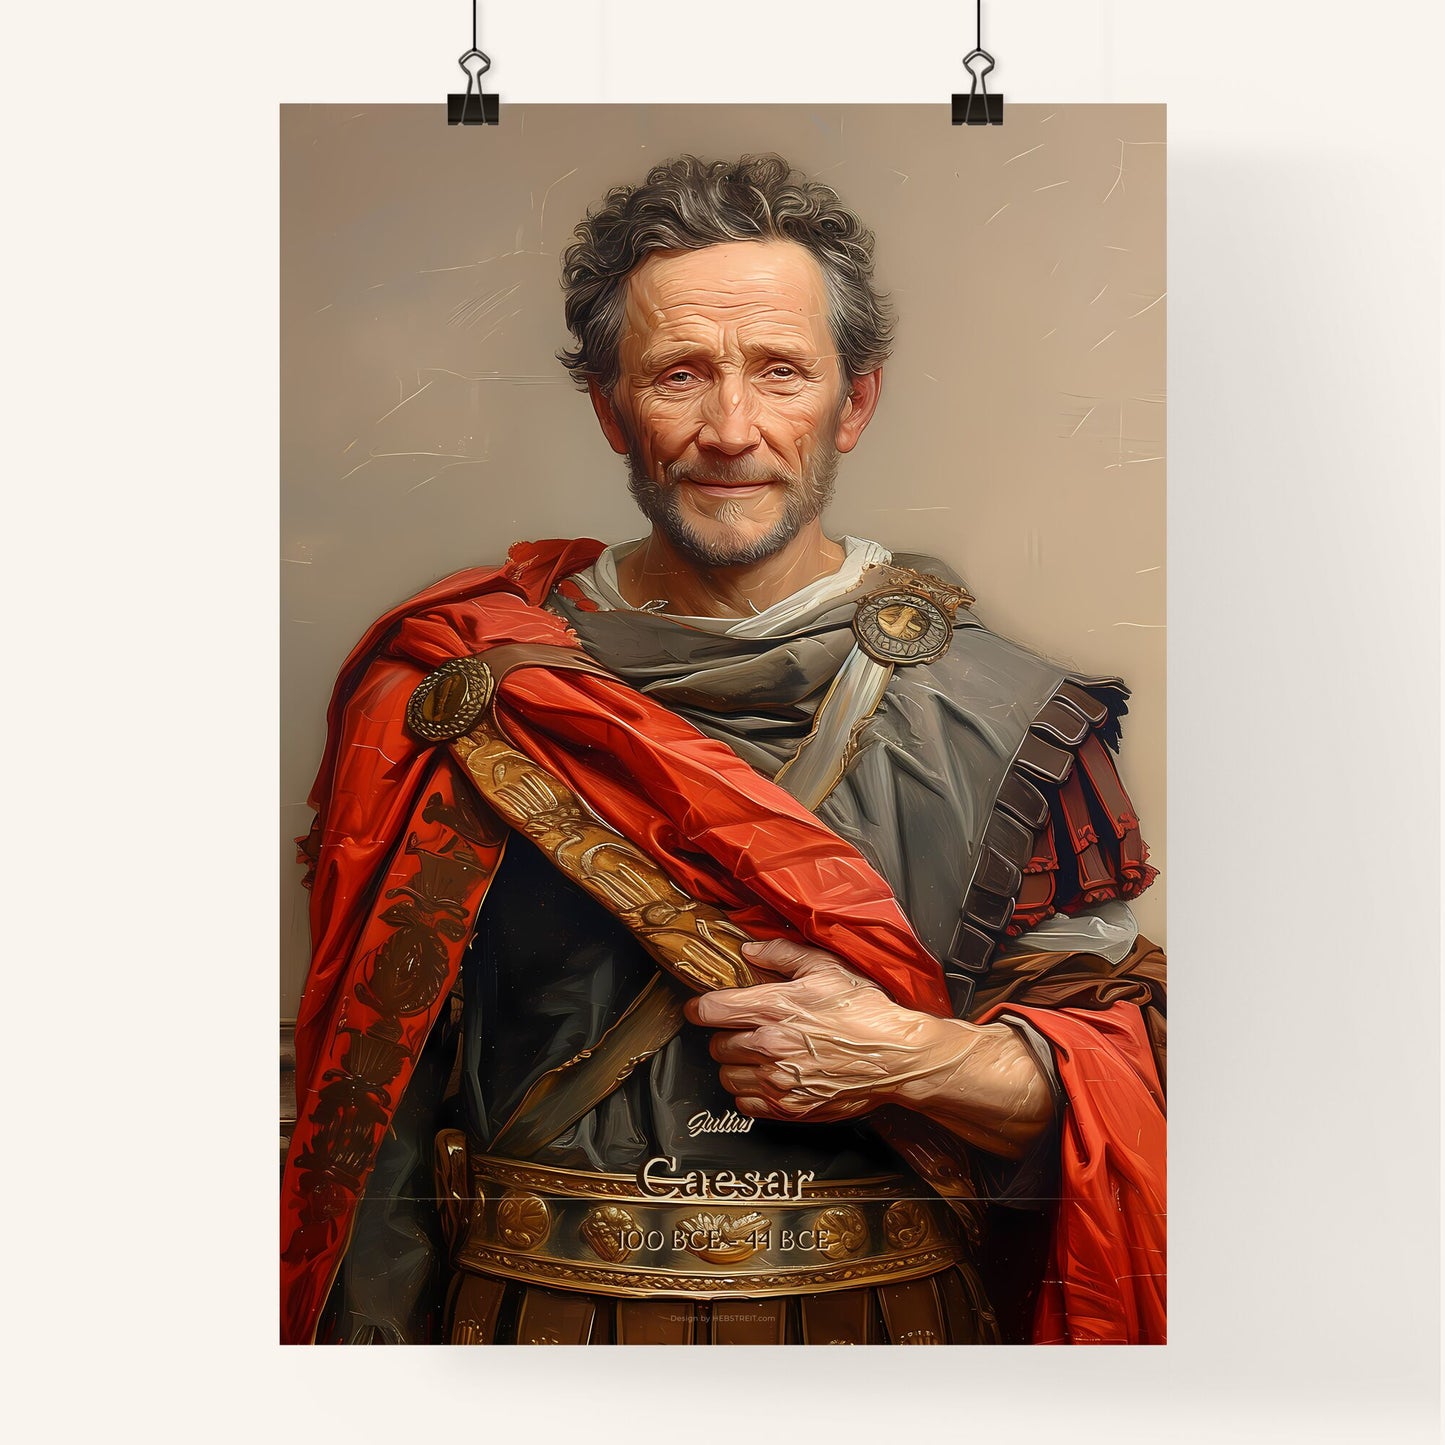 Julius, Caesar, 100 BCE - 44 BCE, A Poster of a man in a garment Default Title